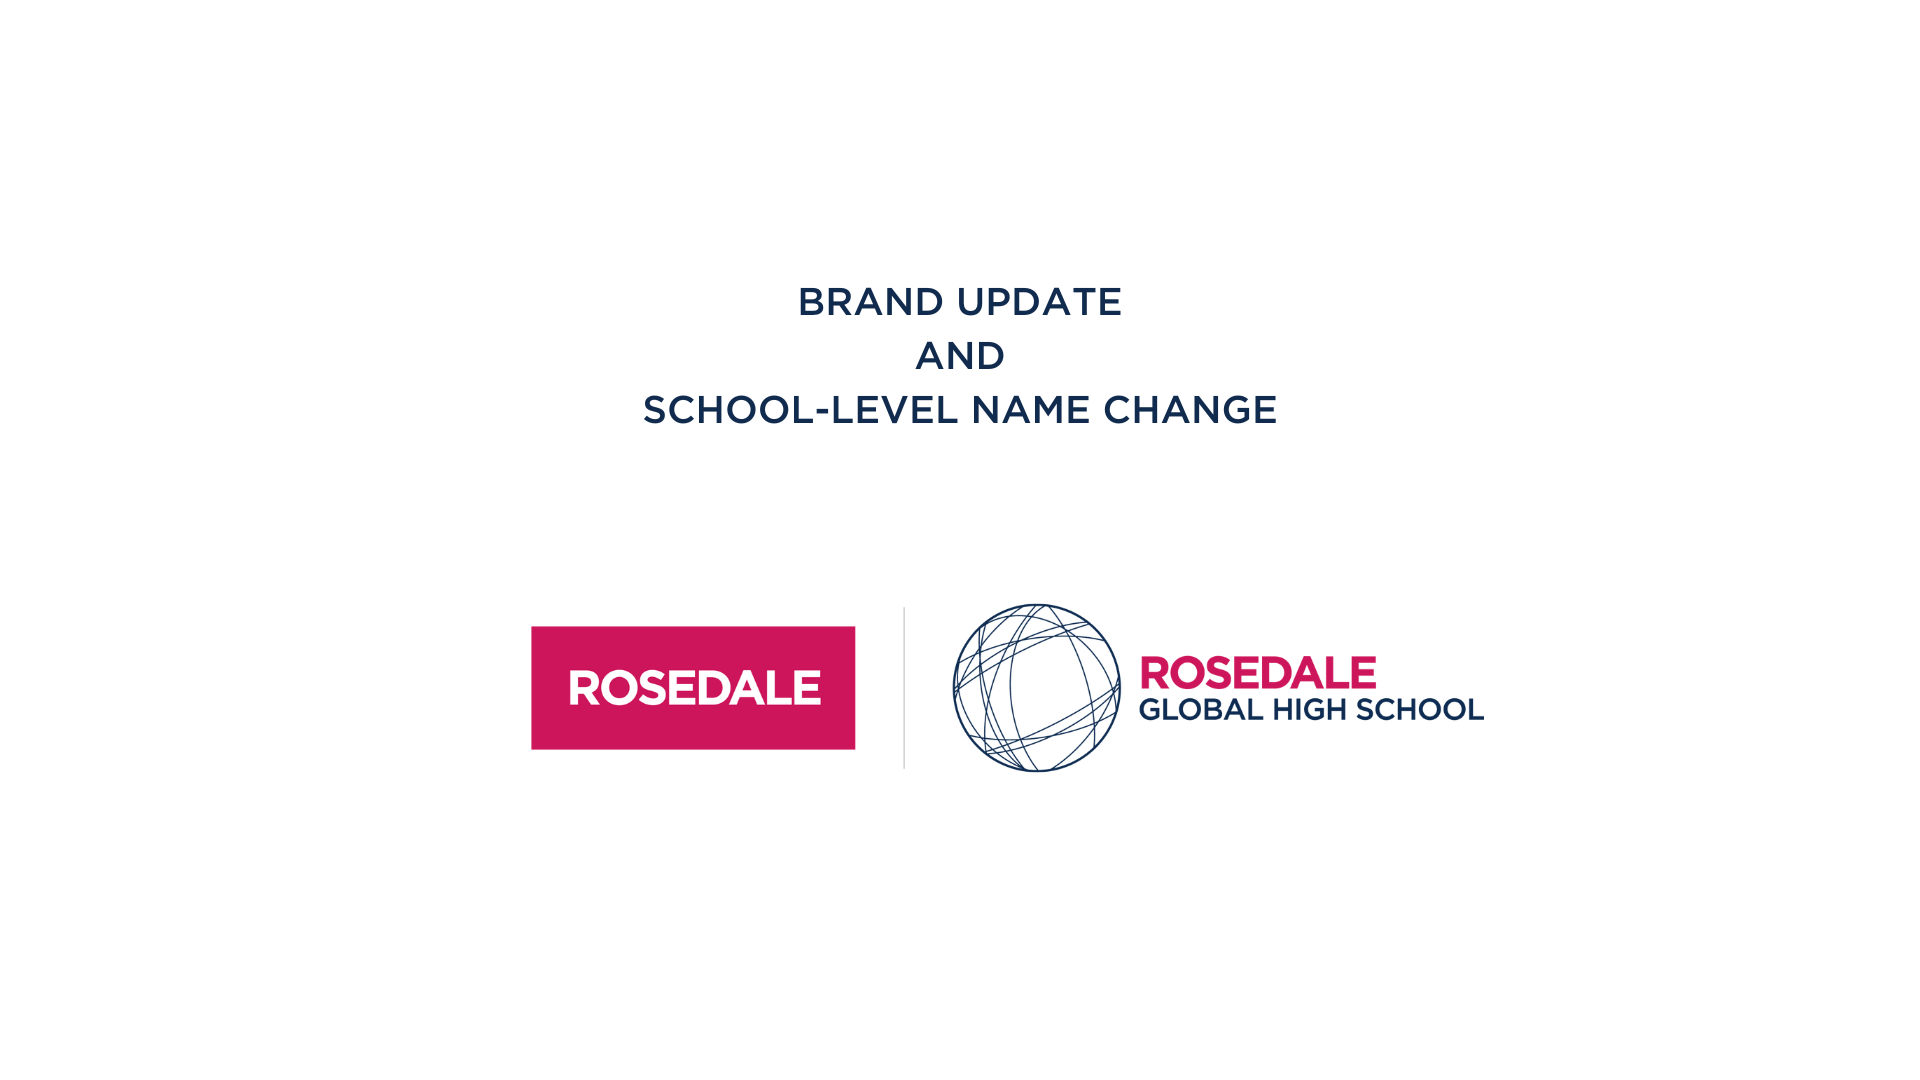 Rosedale Academy is now Rosedale Global High School